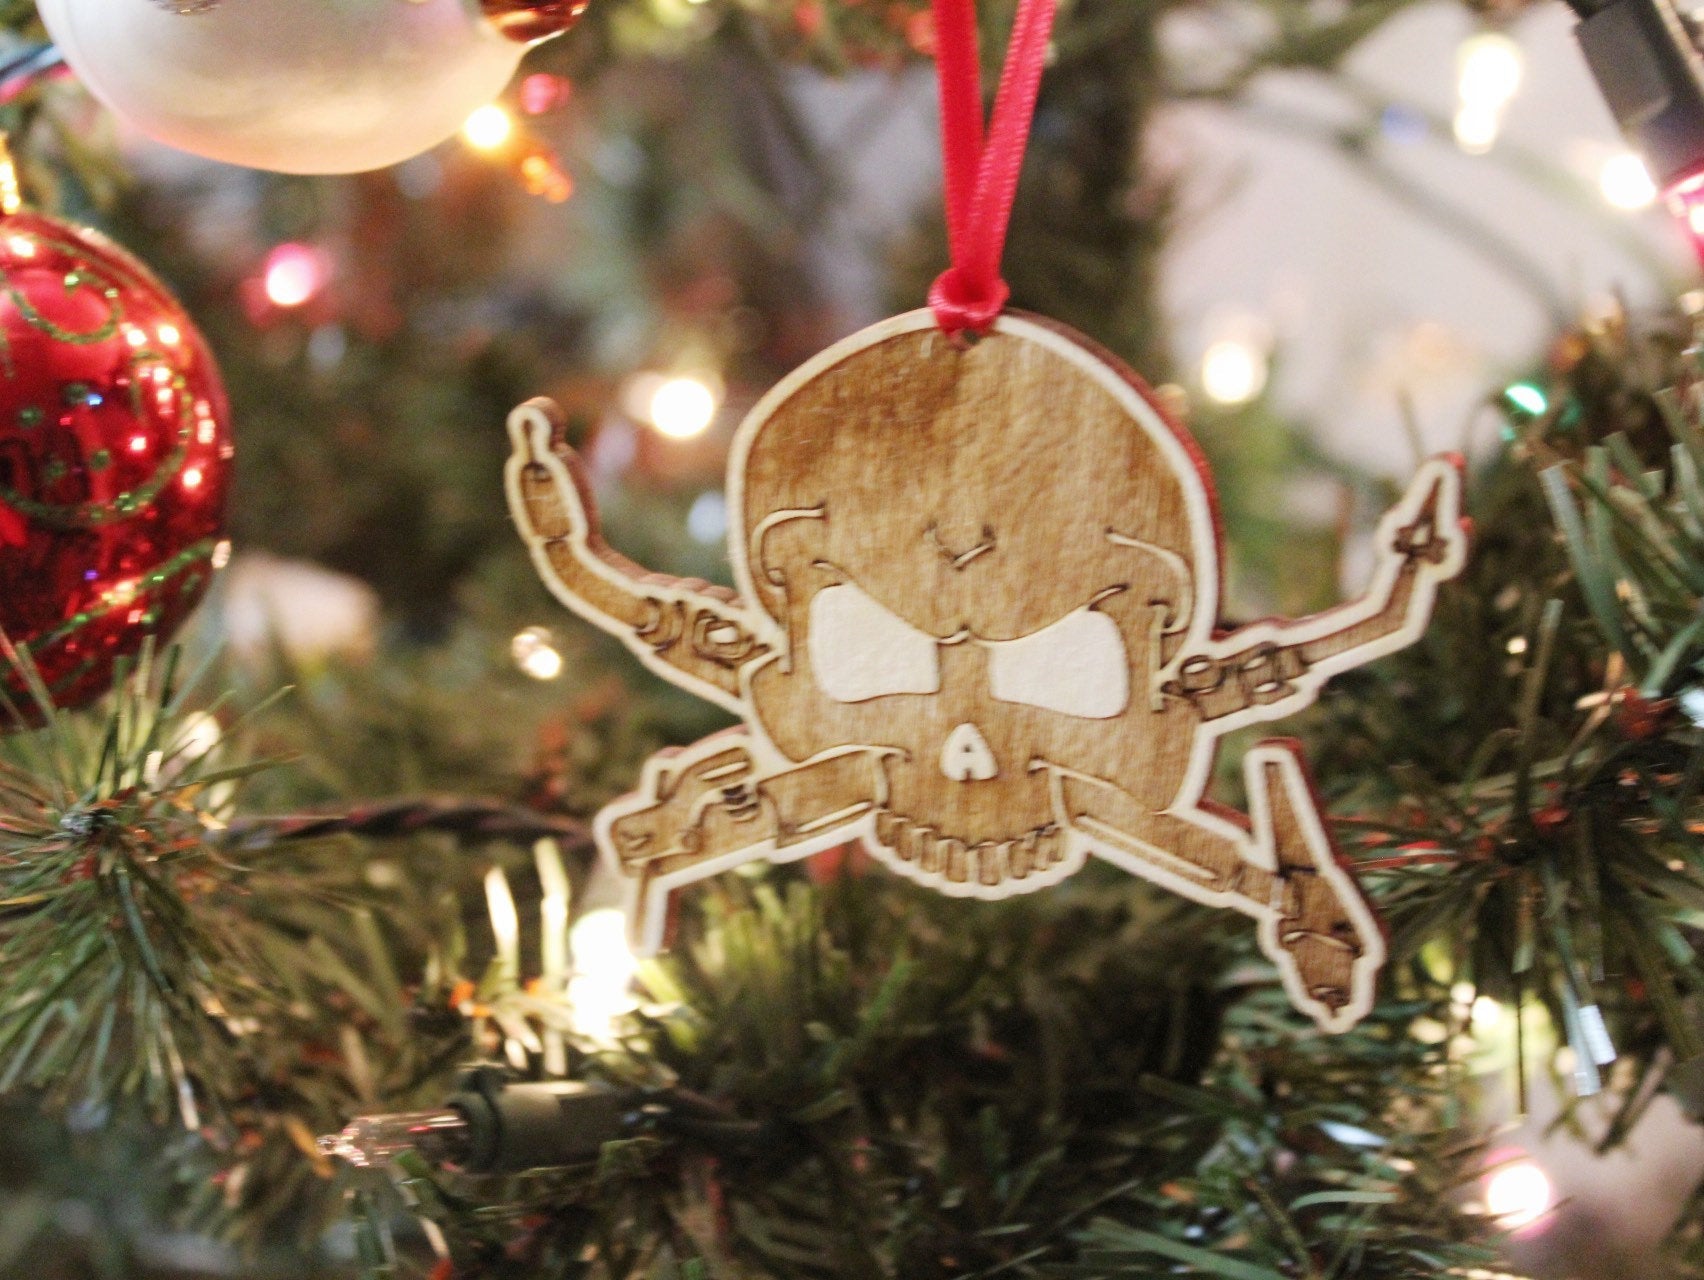 Welder Skull Christmas Ornament Gift For Him, Welders Skull Wooden Engraved Ornament Gift for Welder Dad